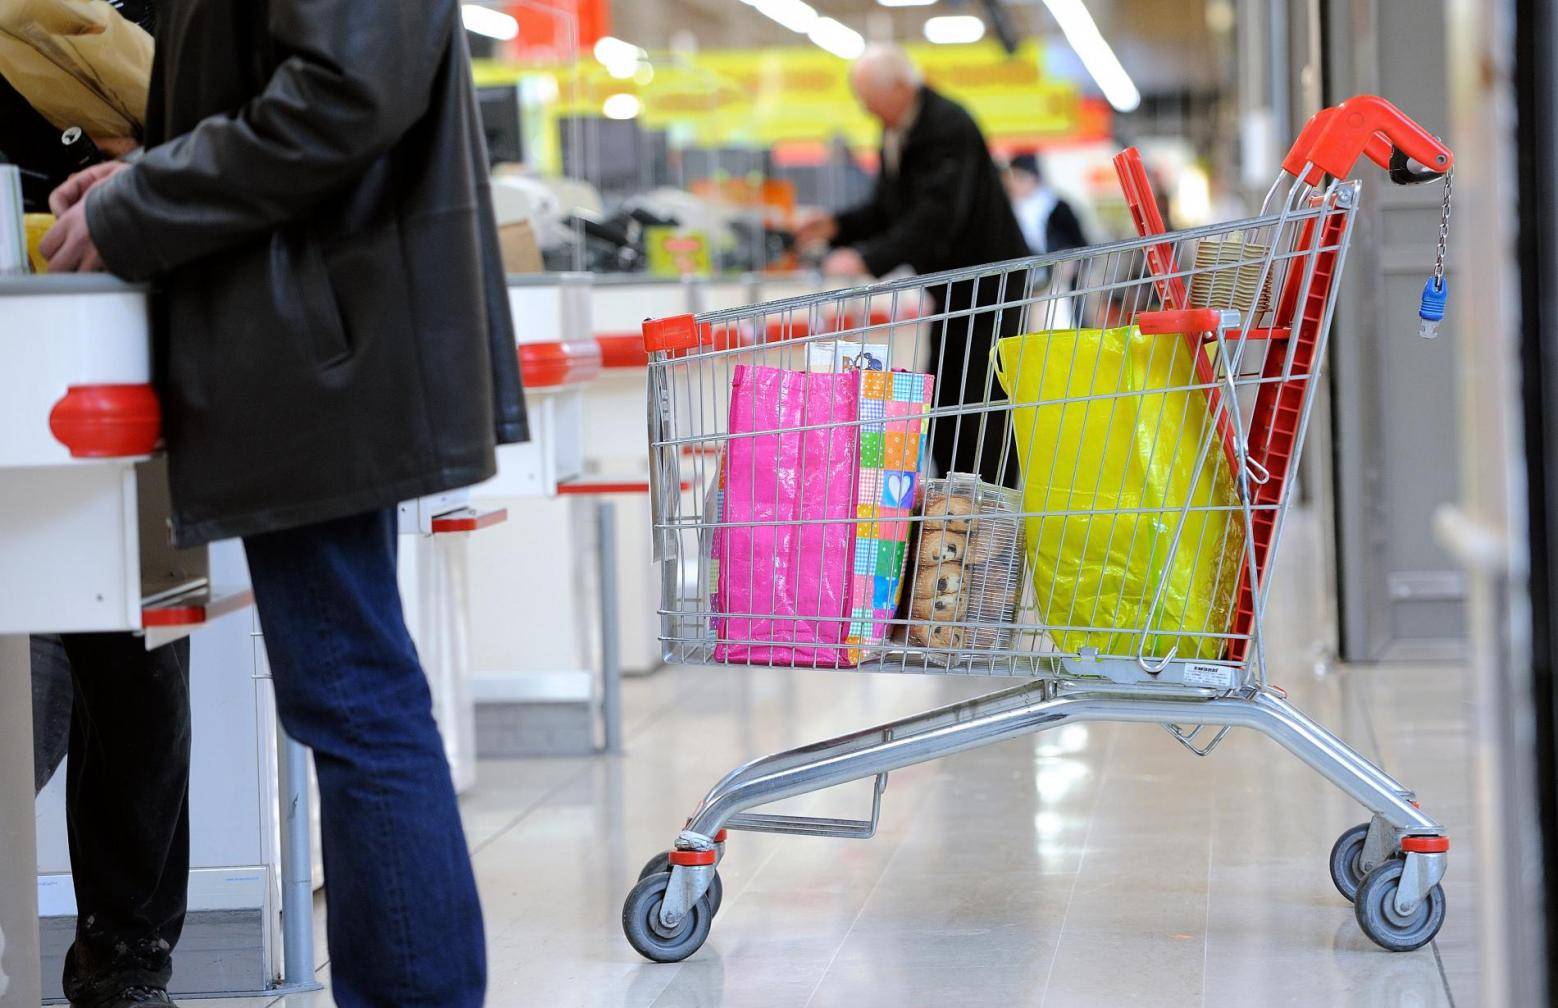 La consommation des ménages en baisse de 1,3% en décembre en France, selon l'Insee